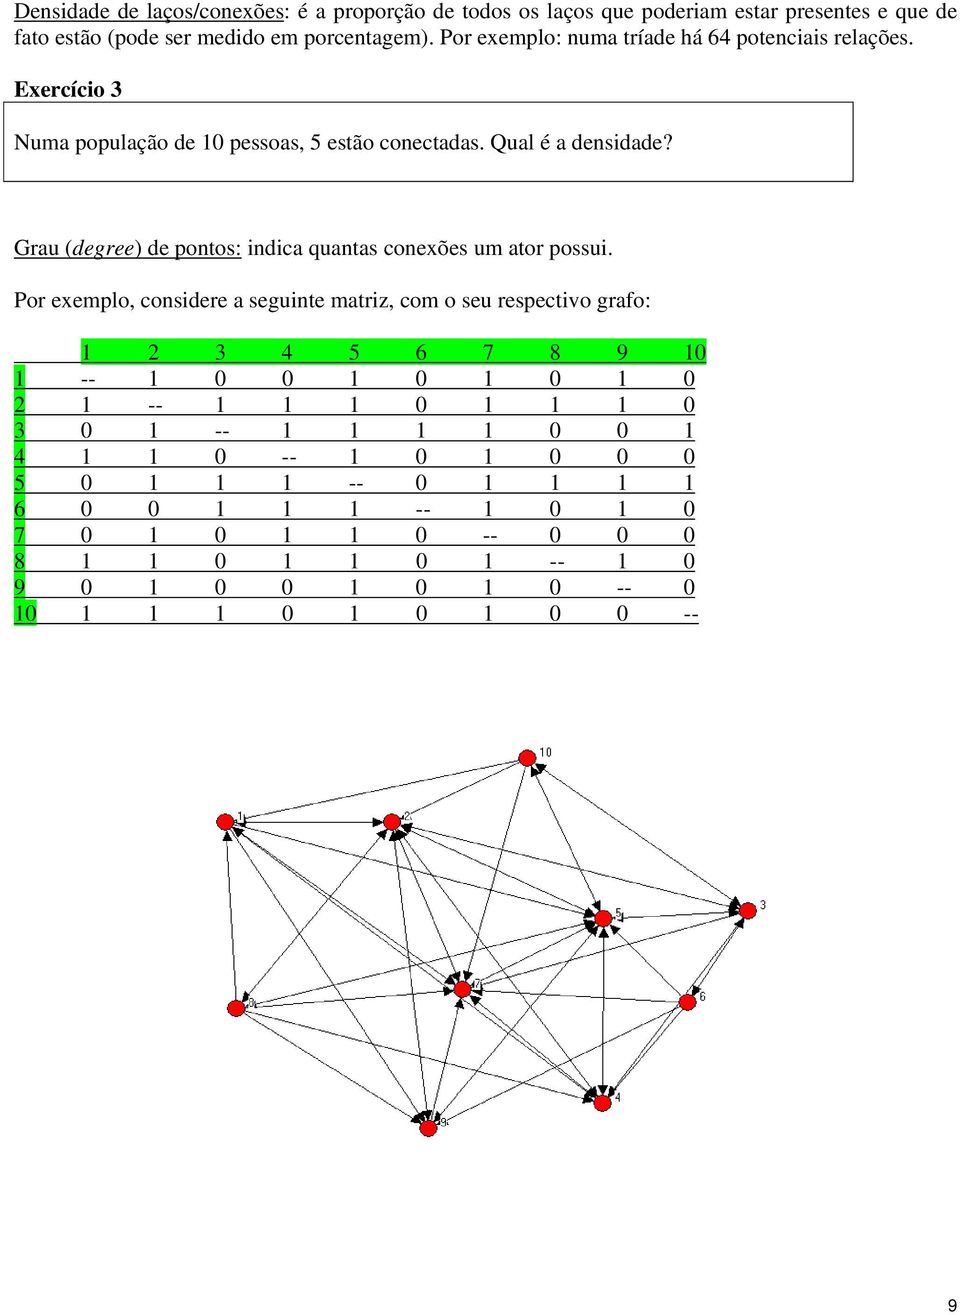 Grau (degree) de pontos: indica quantas conexões um ator possui.